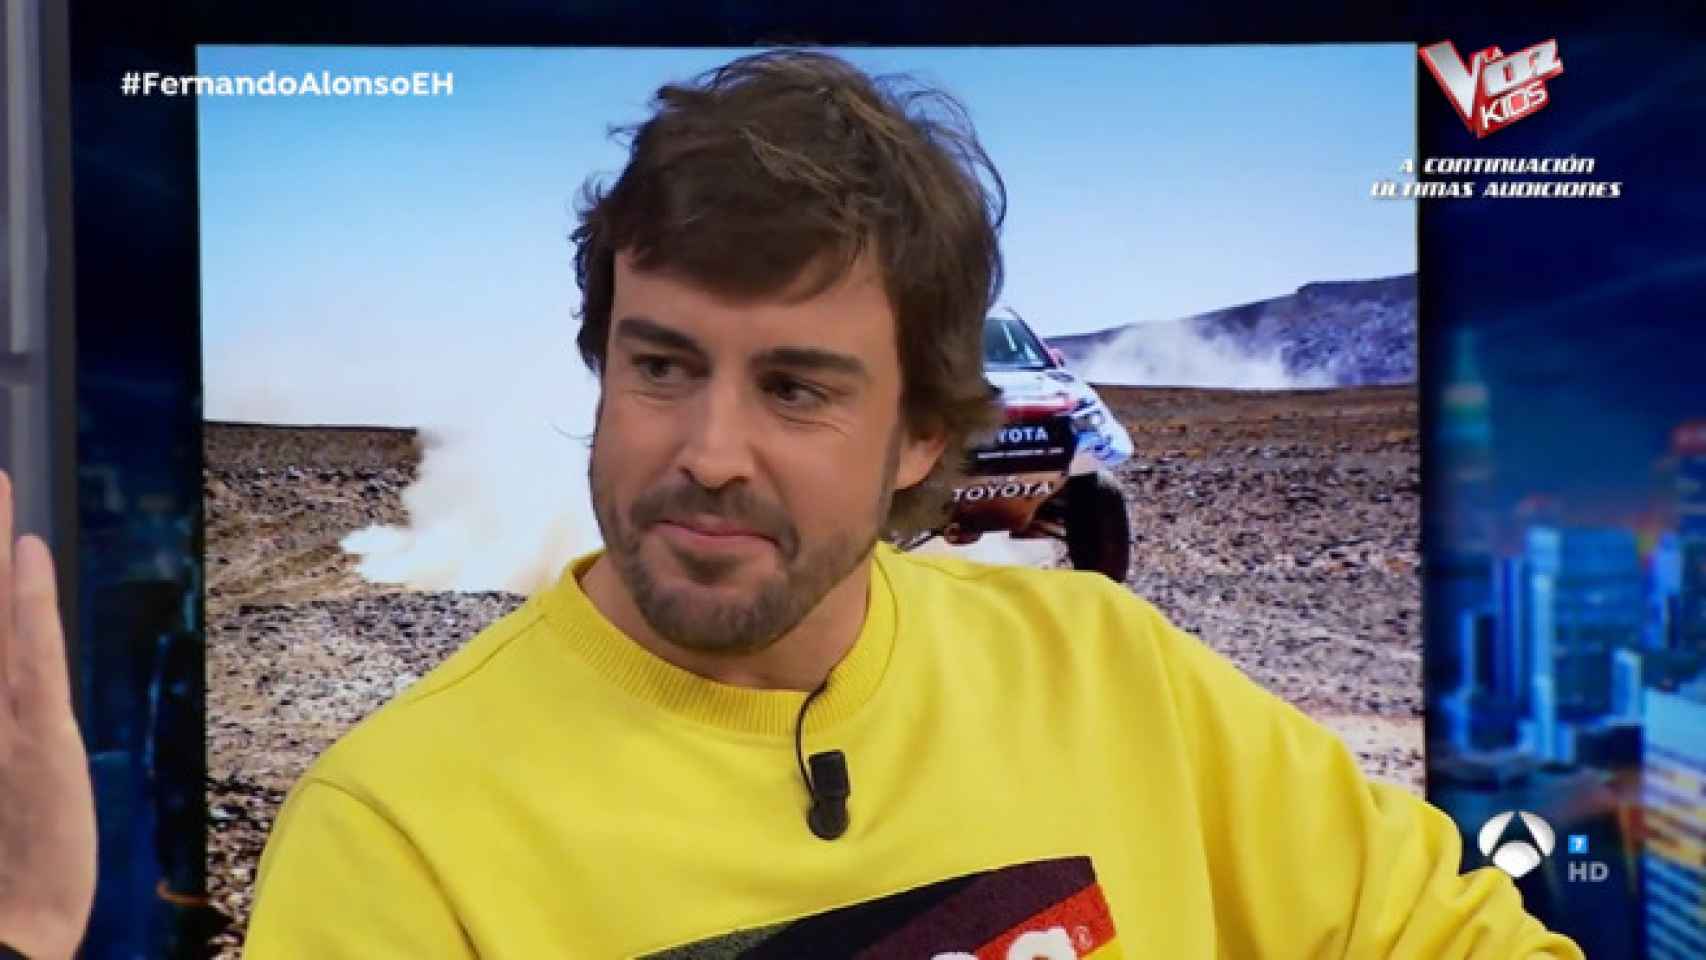 Fernando Alonso ha explicado que su ropa está hecha de forma sostenible.